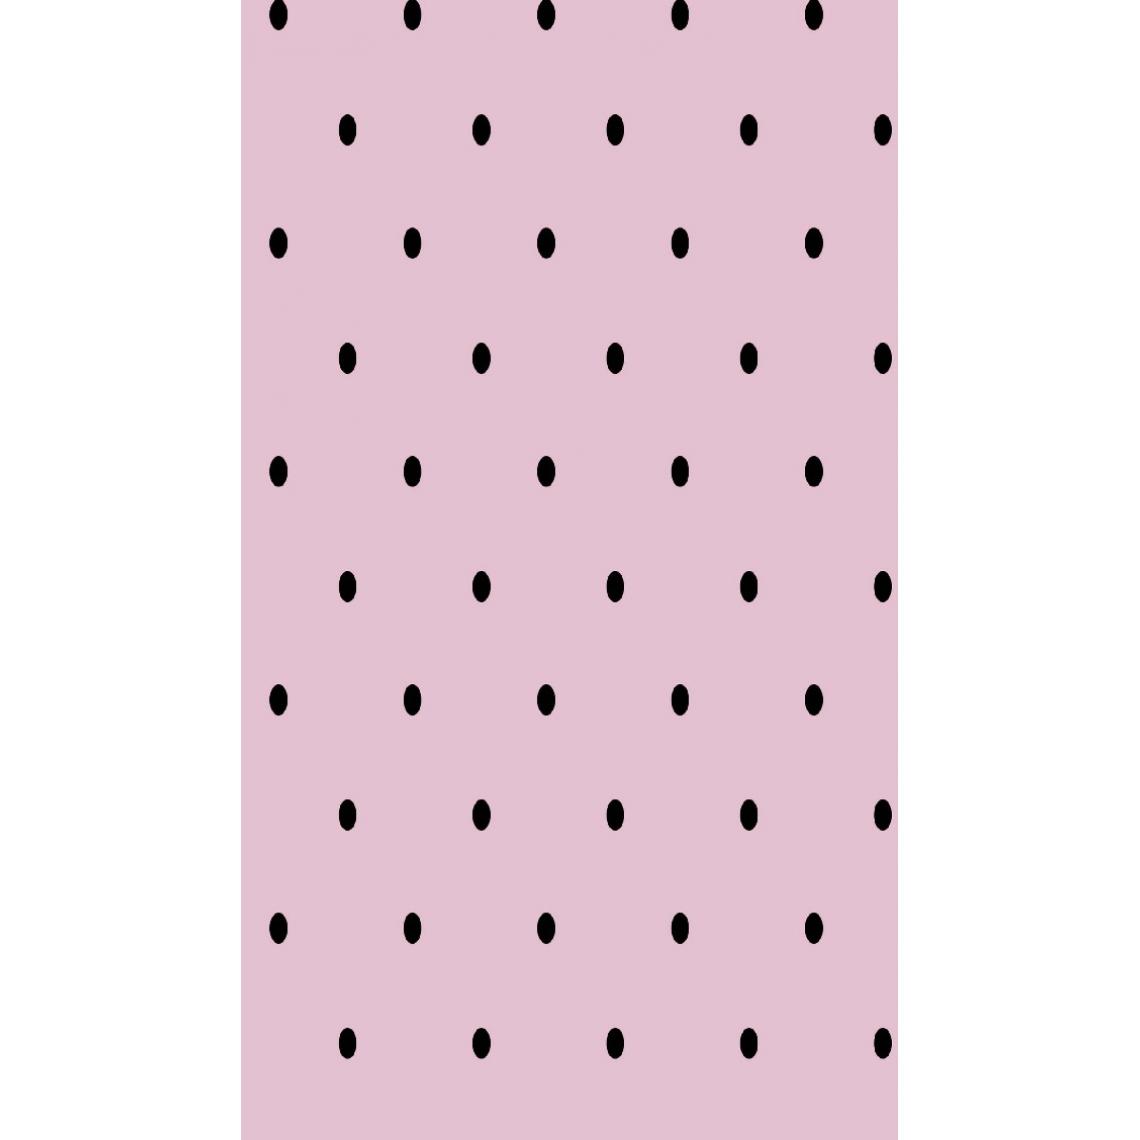 Homemania - HOMEMANIA Tapis Imprimé Dot 1 - pour les enfants - Décoration de Maison - antidérapants - Pour Salon, séjour, chambre à coucher - Rose, noir en Polyester, Coton, 80 x 300 cm - Tapis